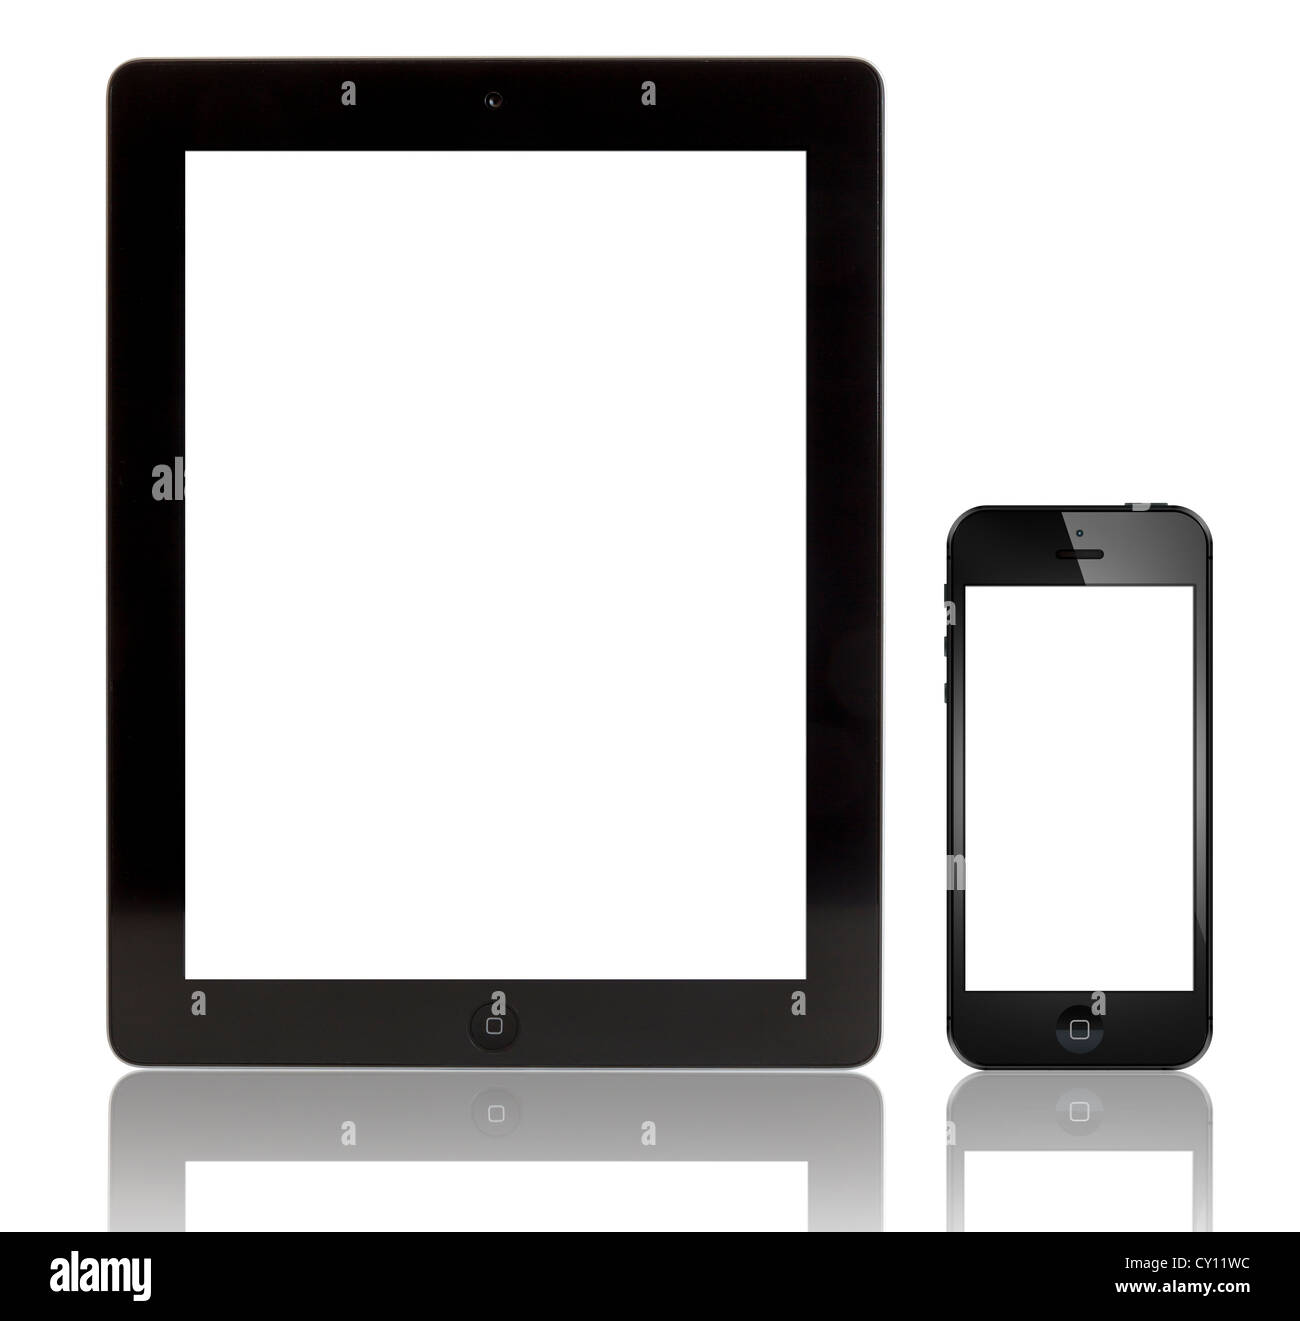 Apple nuovo iPad 3 e iPhone 5 con schermo vuoto Foto Stock